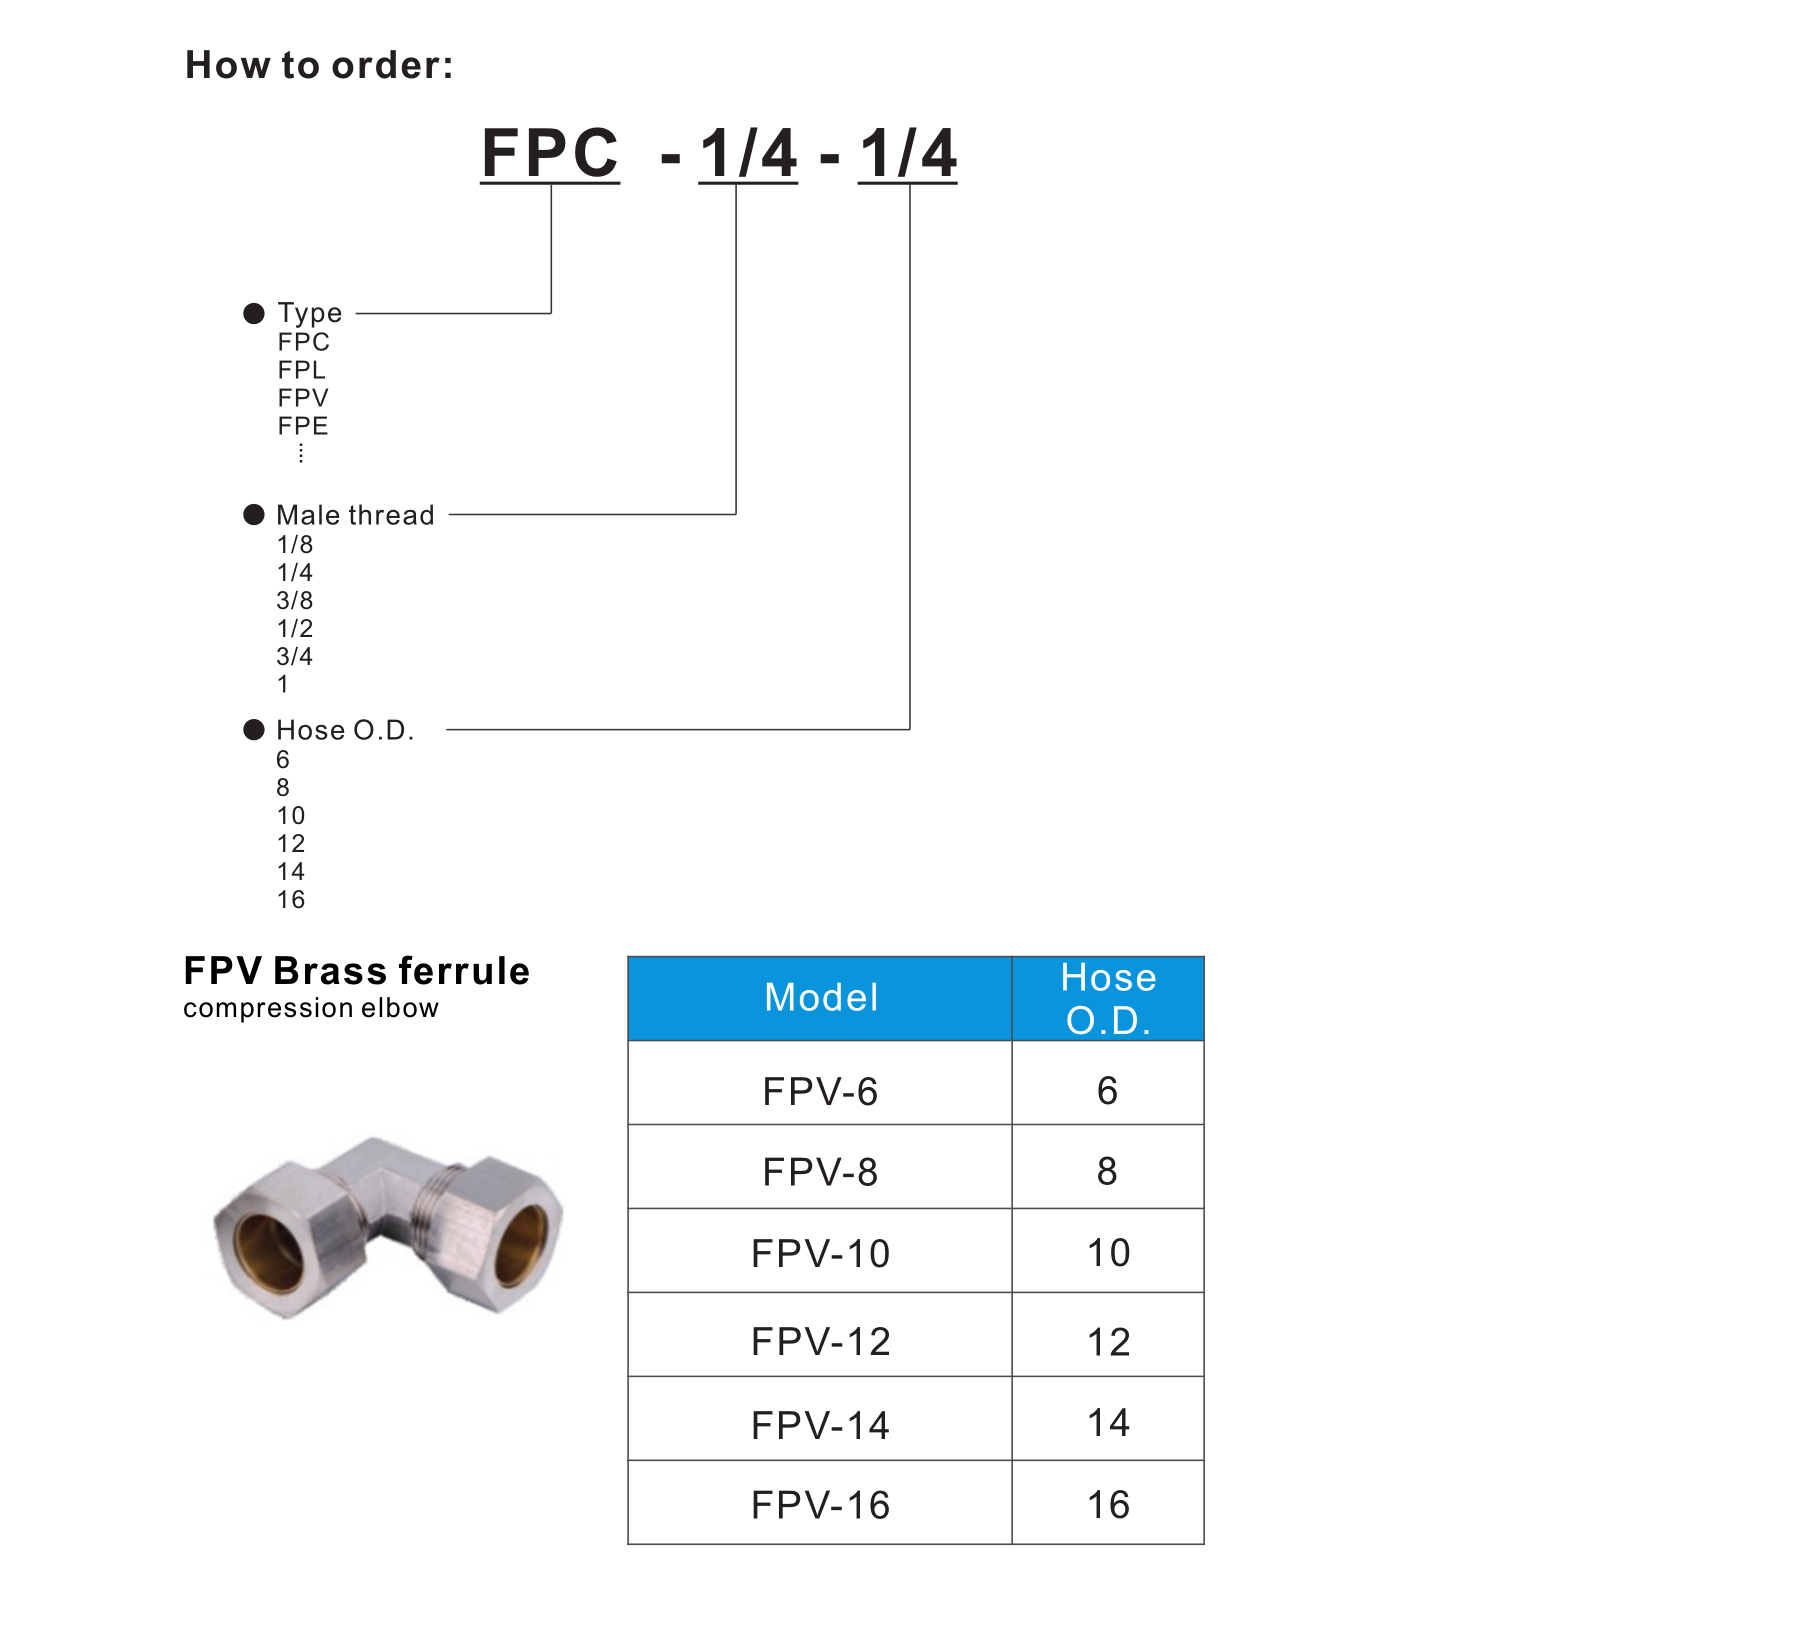 FPV Brass ferrule compression elbow